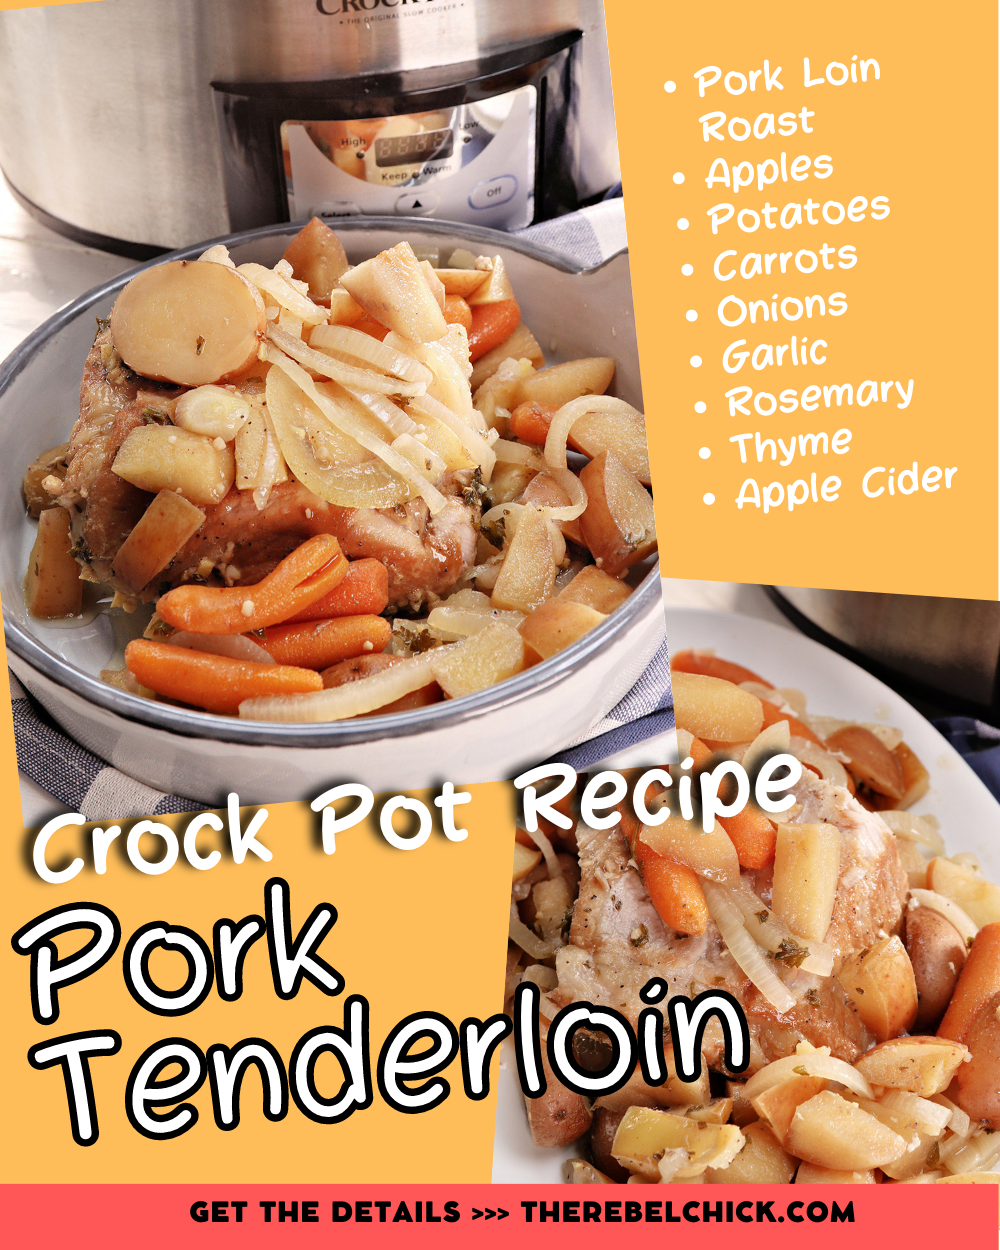 Easy Slow Cooker Pork Loin Roast Recipe - The Recipe Rebel